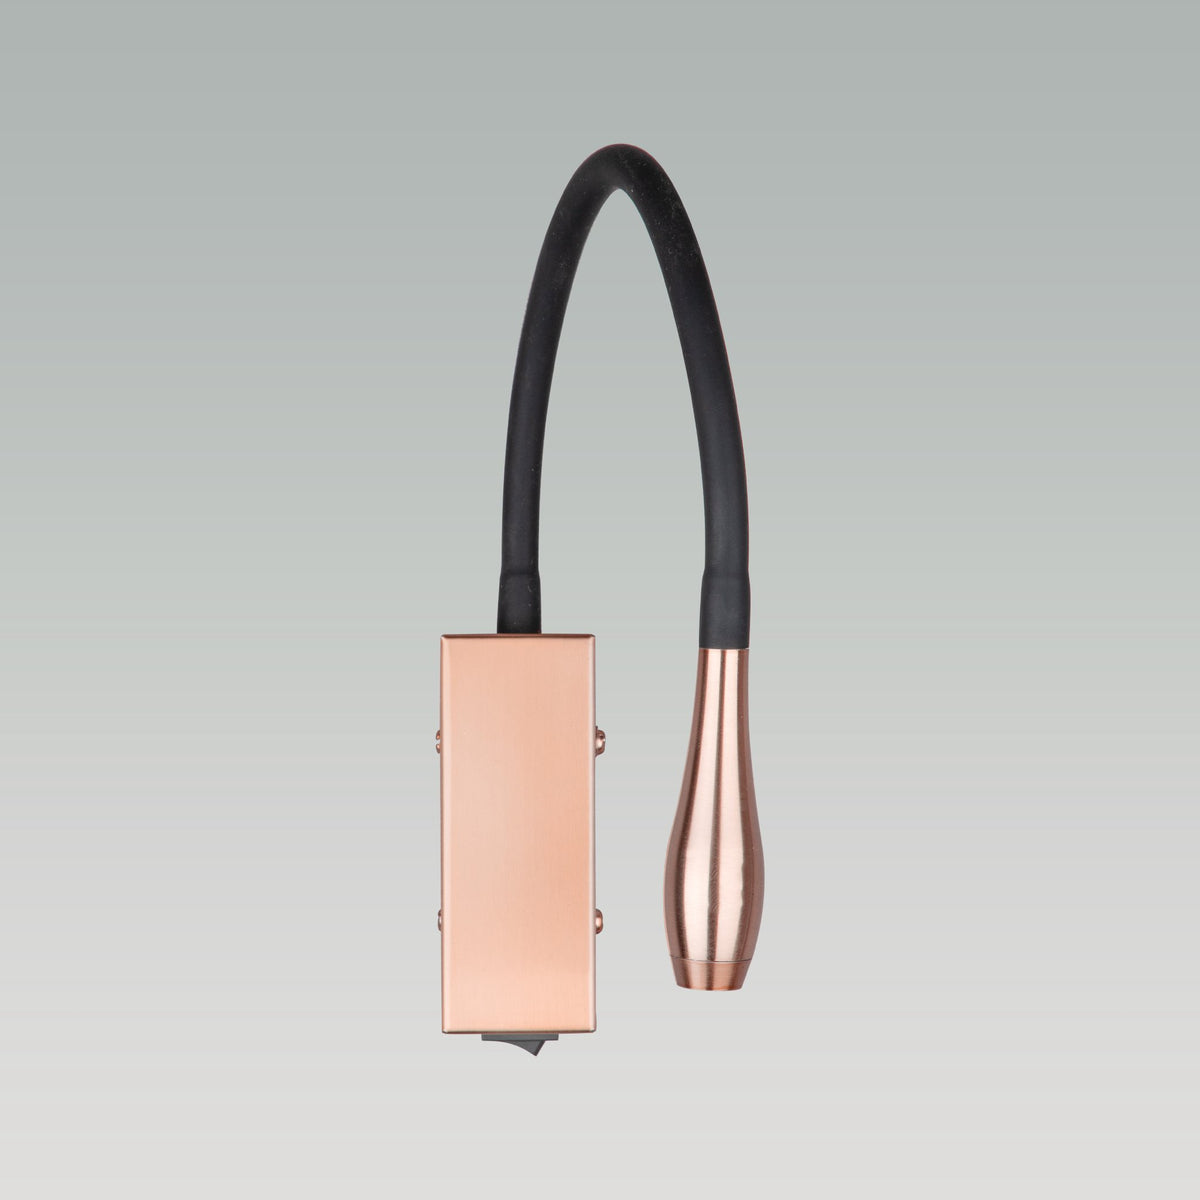 Shop Flexi Copper LED Light online